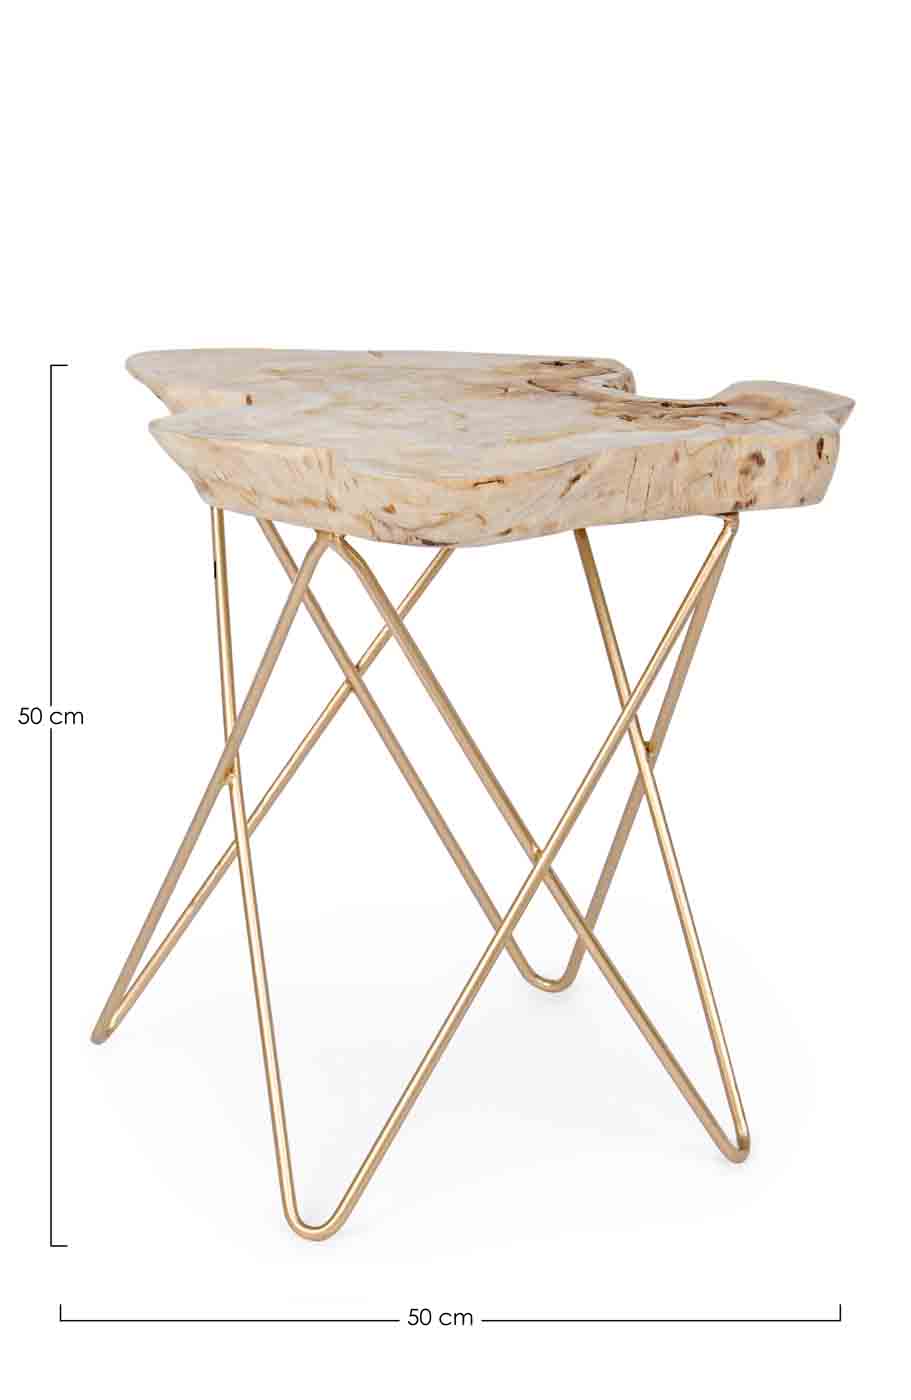 Die Tischplatte des Couchtisches Savanna wurde aus einer Teakholz-Wurzel gefertigt, dadurch ist jeder Tisch ein Unikat. Das Gestell ist aus Stahl und wurde vergoldet.